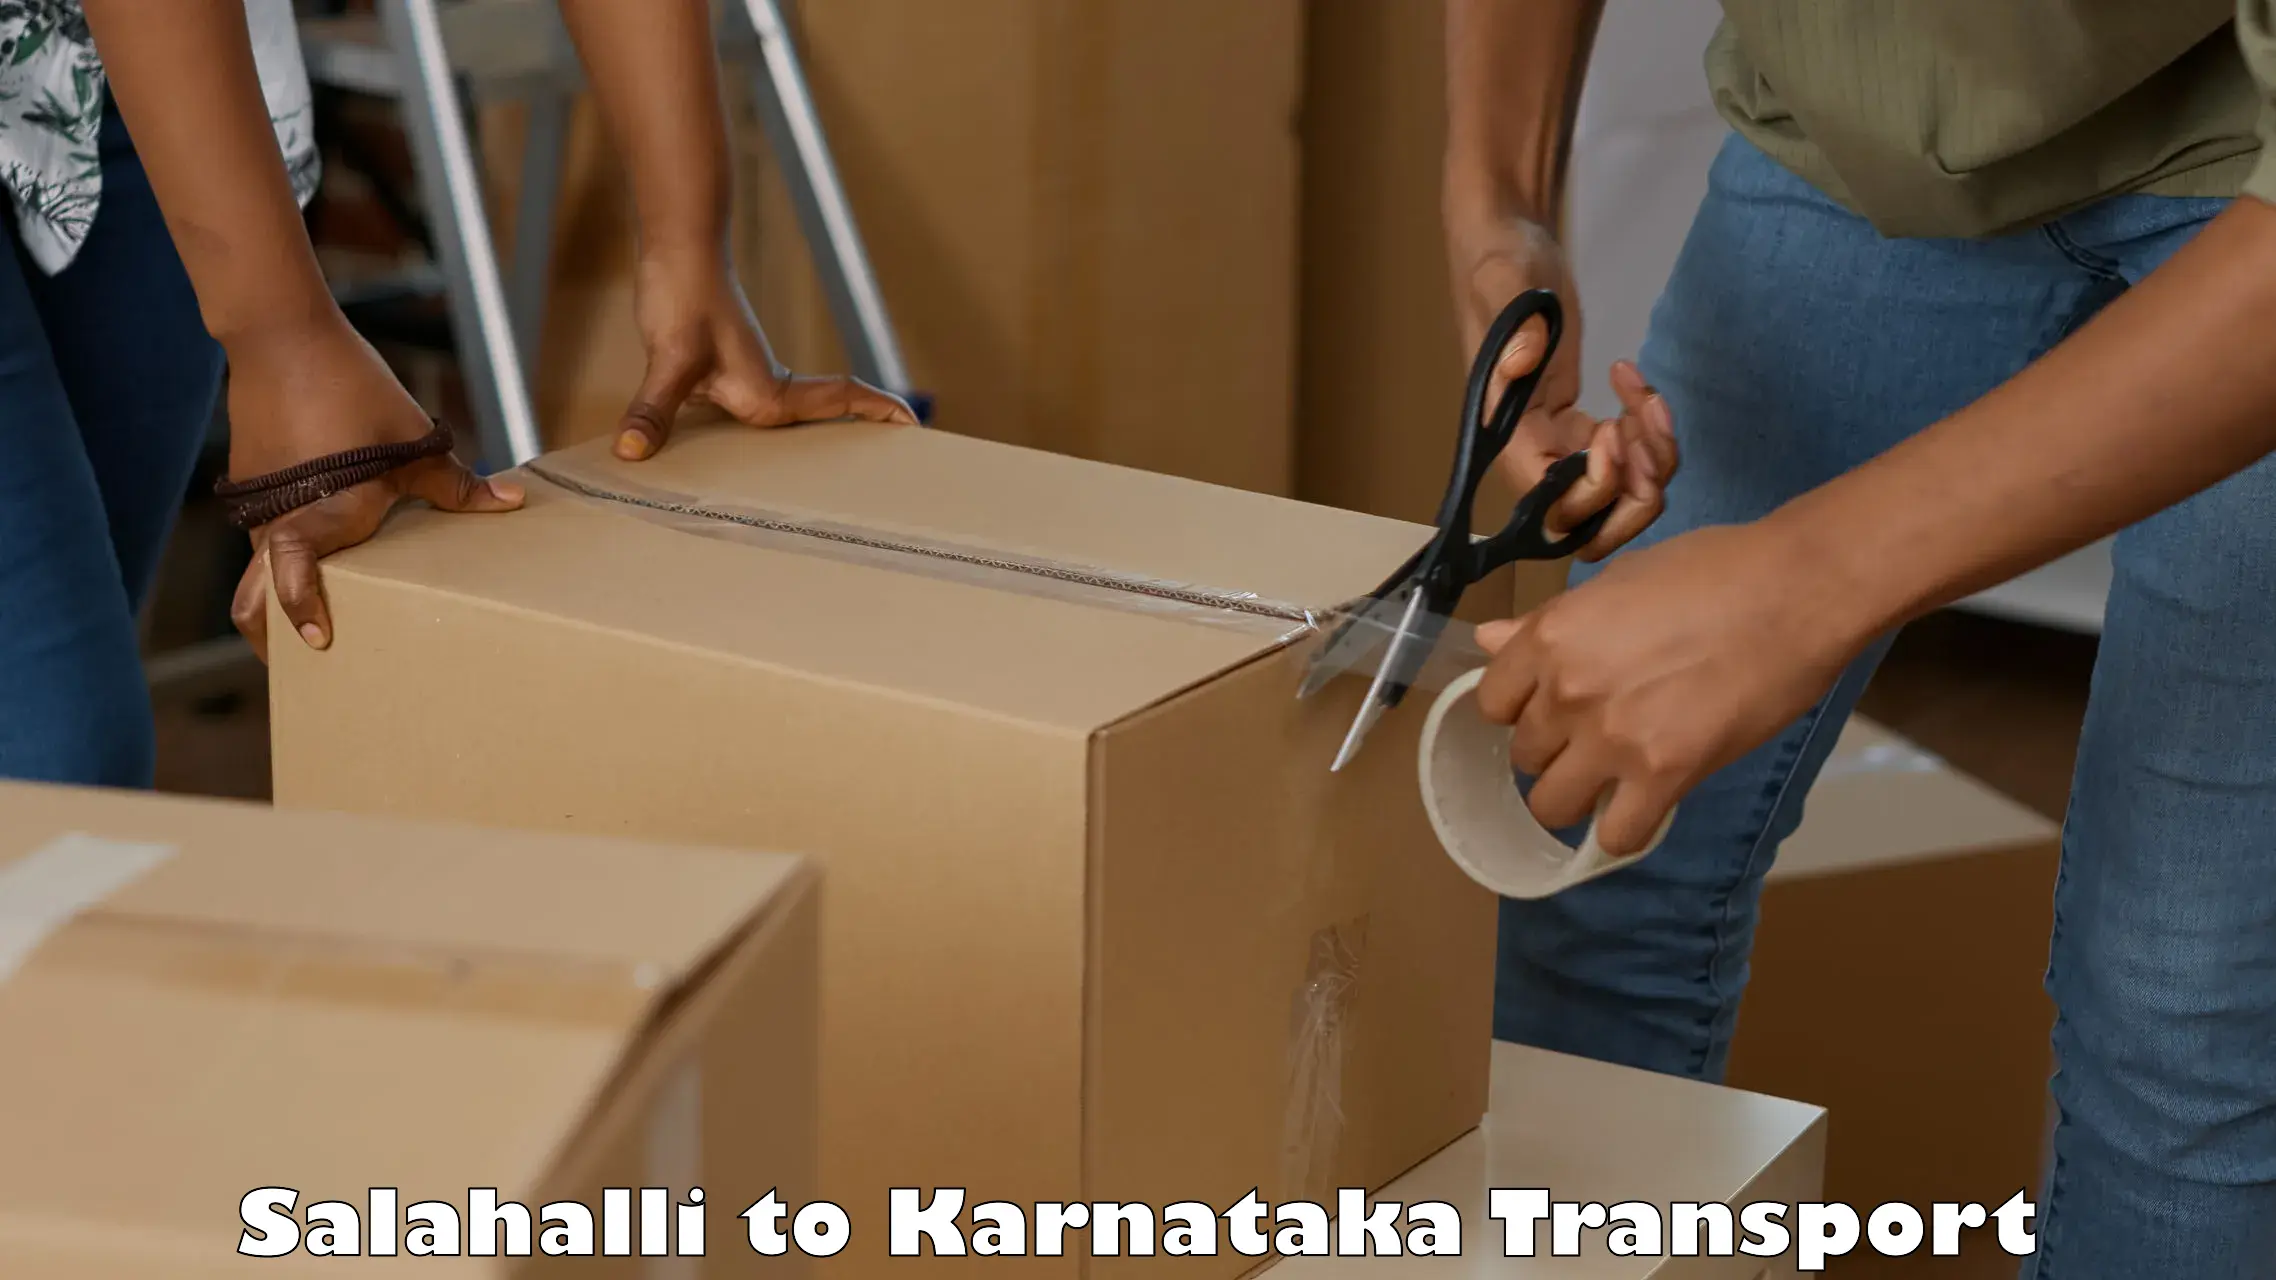 Furniture transport service Salahalli to Srirangapatna